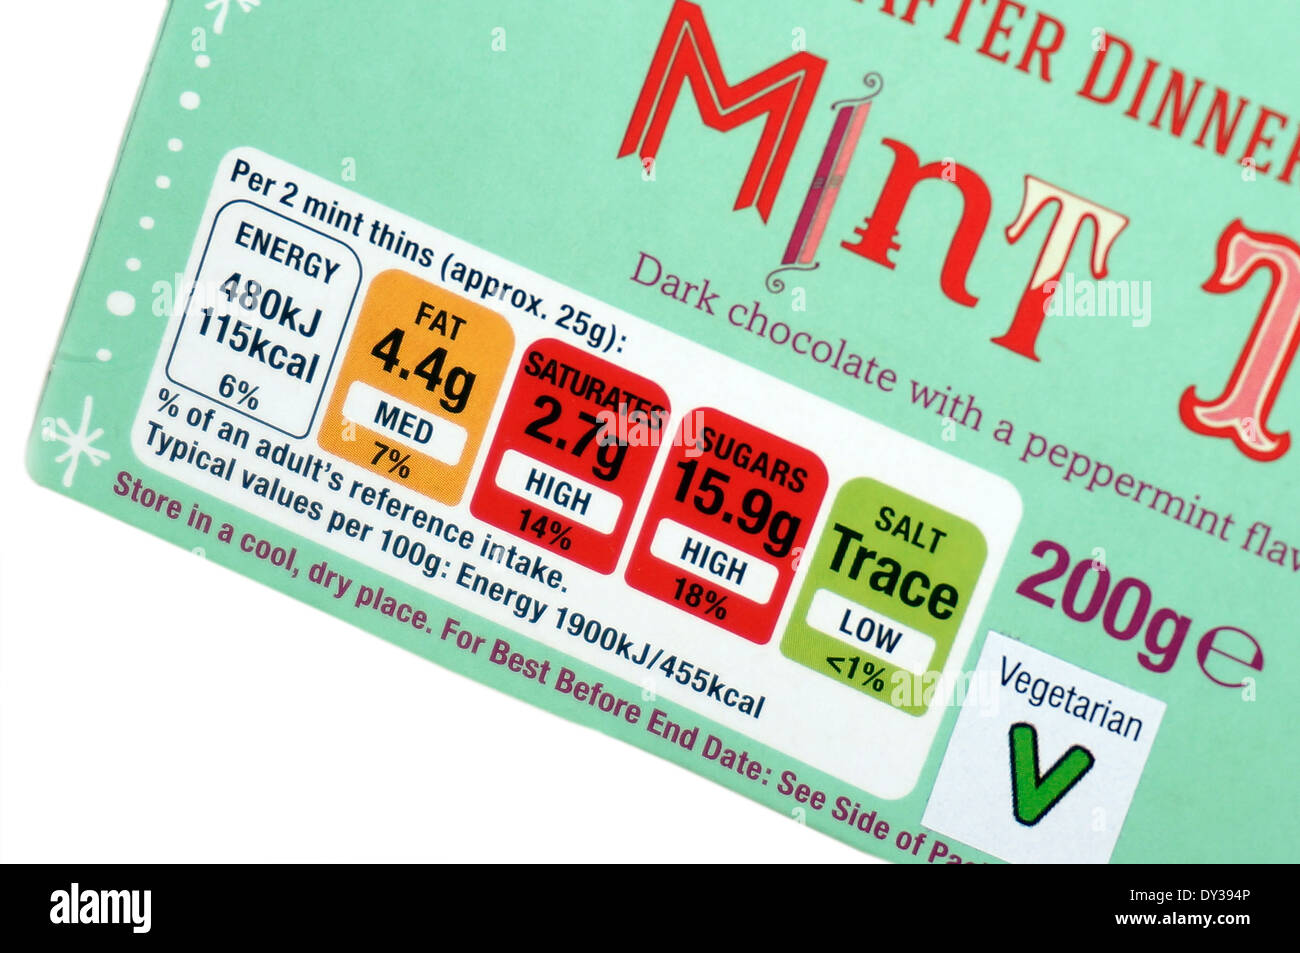 Système de feux de circulation de l'information nutritionnelle des lignes directrices sur une boîte de Co-operative le chocolat noir à la menthe s'amincit Banque D'Images